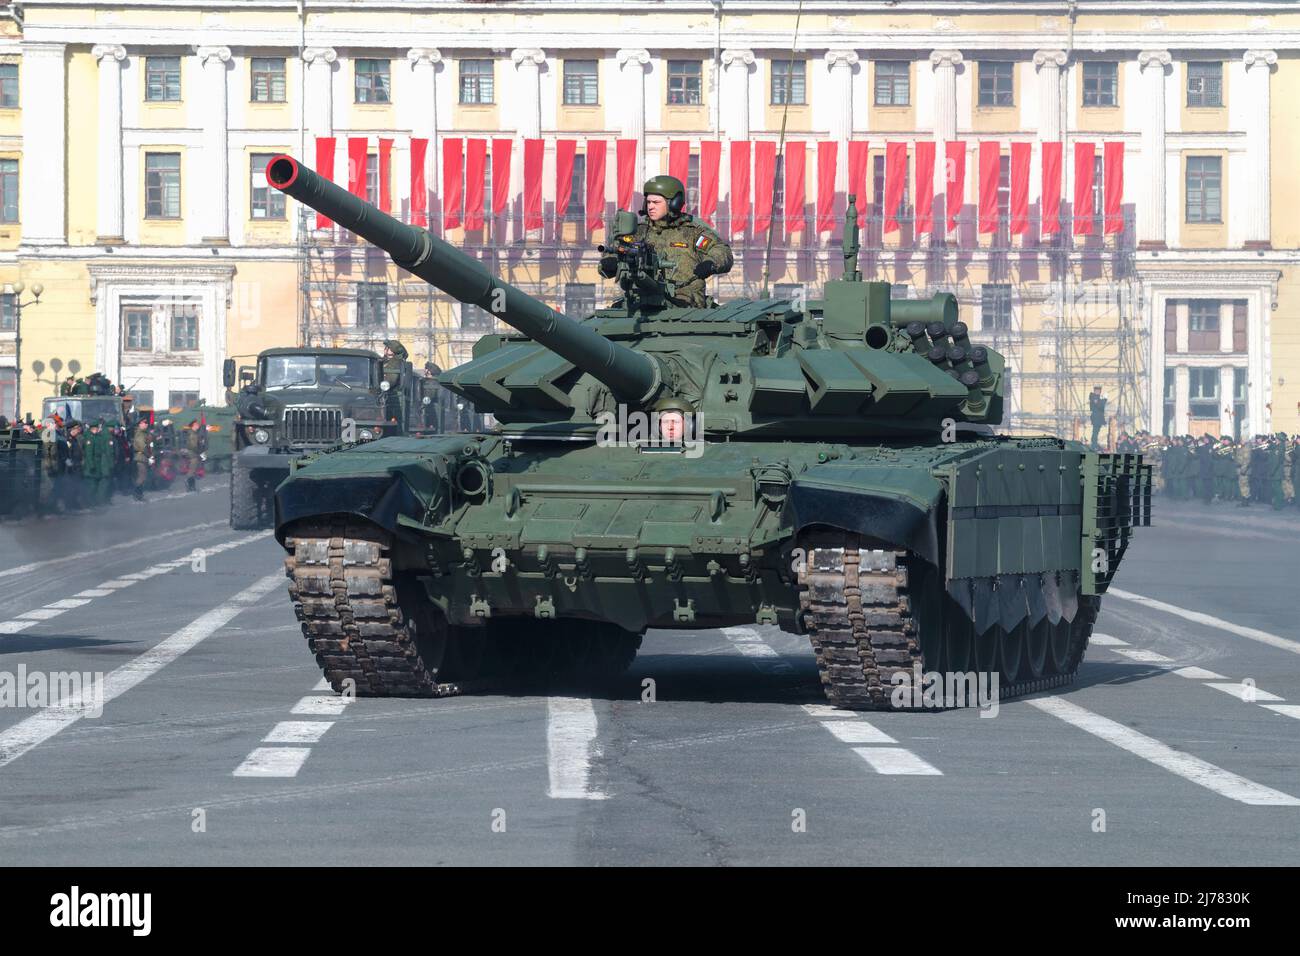 SAINT-PÉTERSBOURG, RUSSIE - 28 AVRIL 2022 : le char russe principal T-72B3 sur la répétition du défilé militaire en l'honneur du jour de la victoire, un jour ensoleillé Banque D'Images